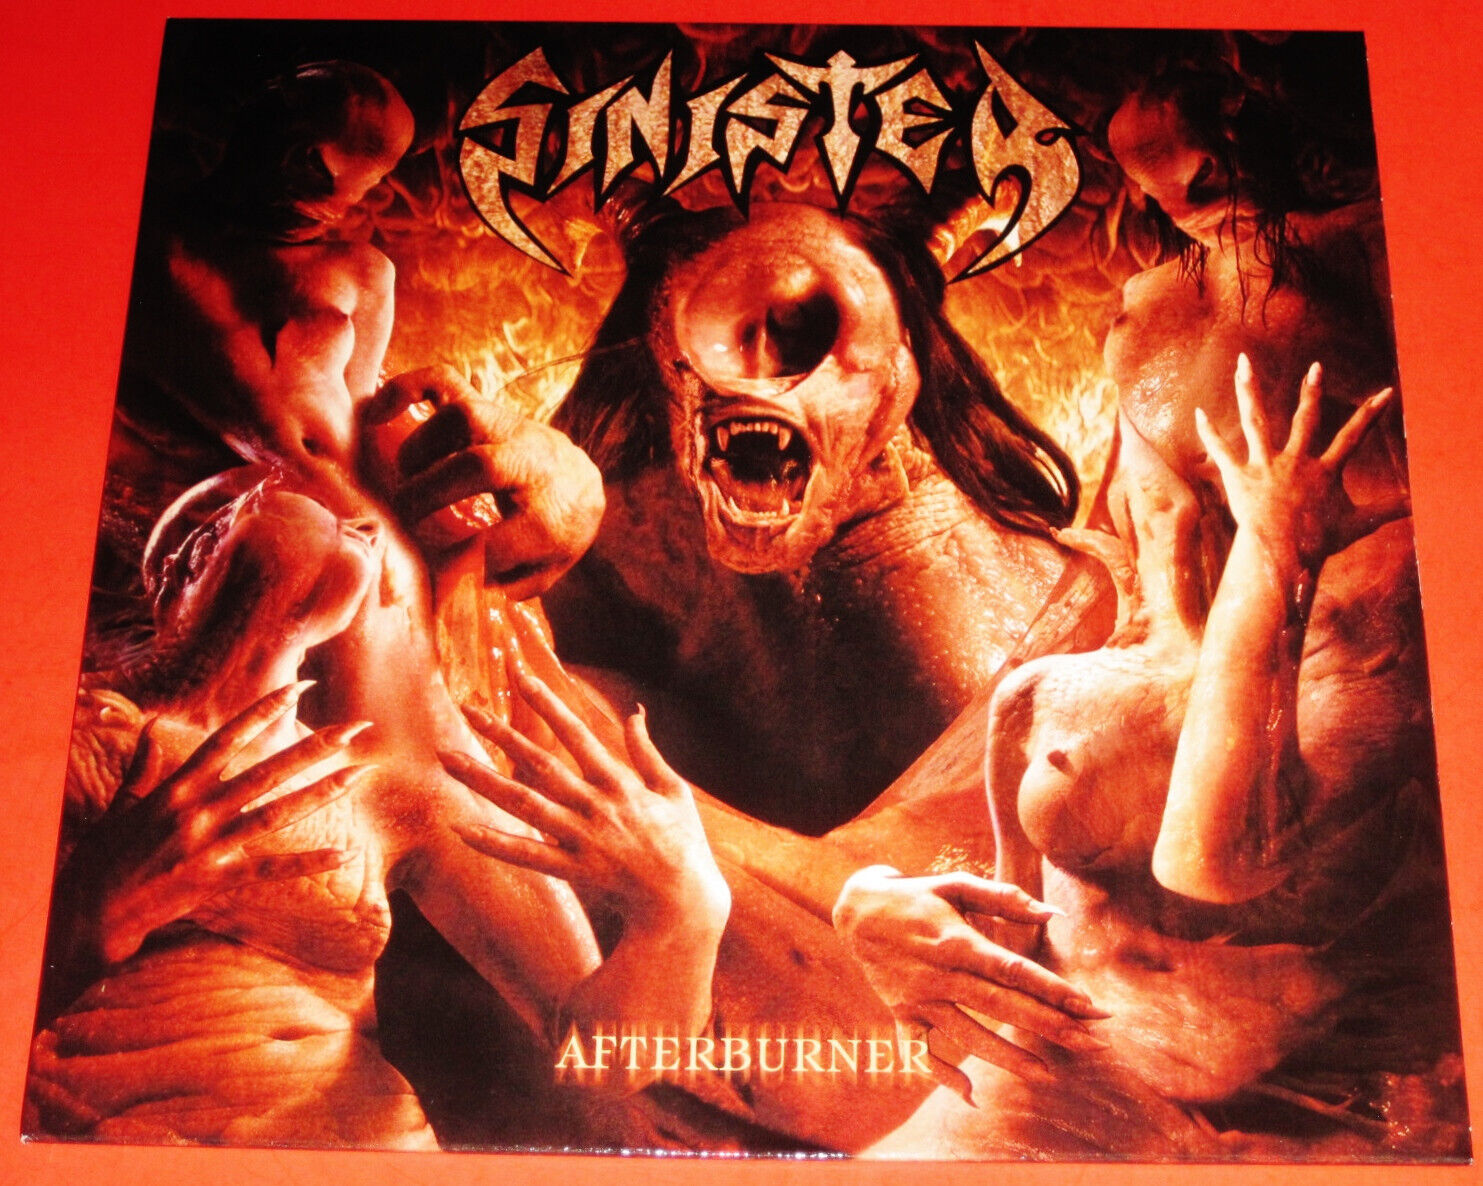 Sinister: Afterburner - Limited Edition LP Splatter Color Vinyl Record 2020 NEW